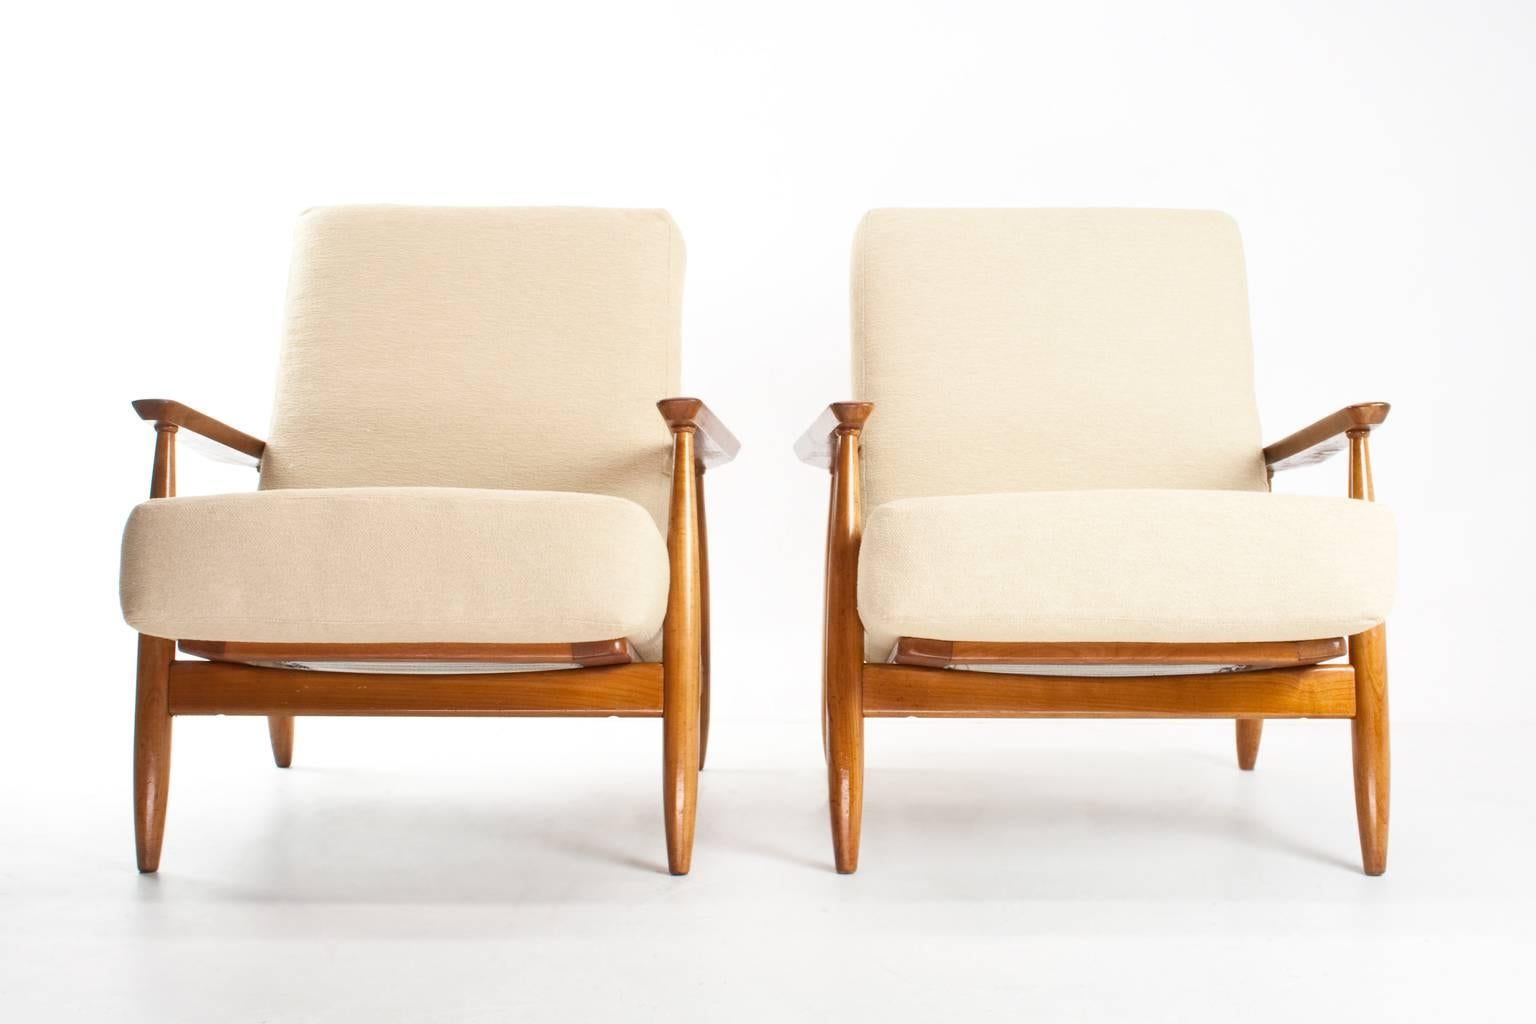 Scandinavian Modern Beautiful Pair of Danish Modern Easy Chairs 1960s, New Upholstered